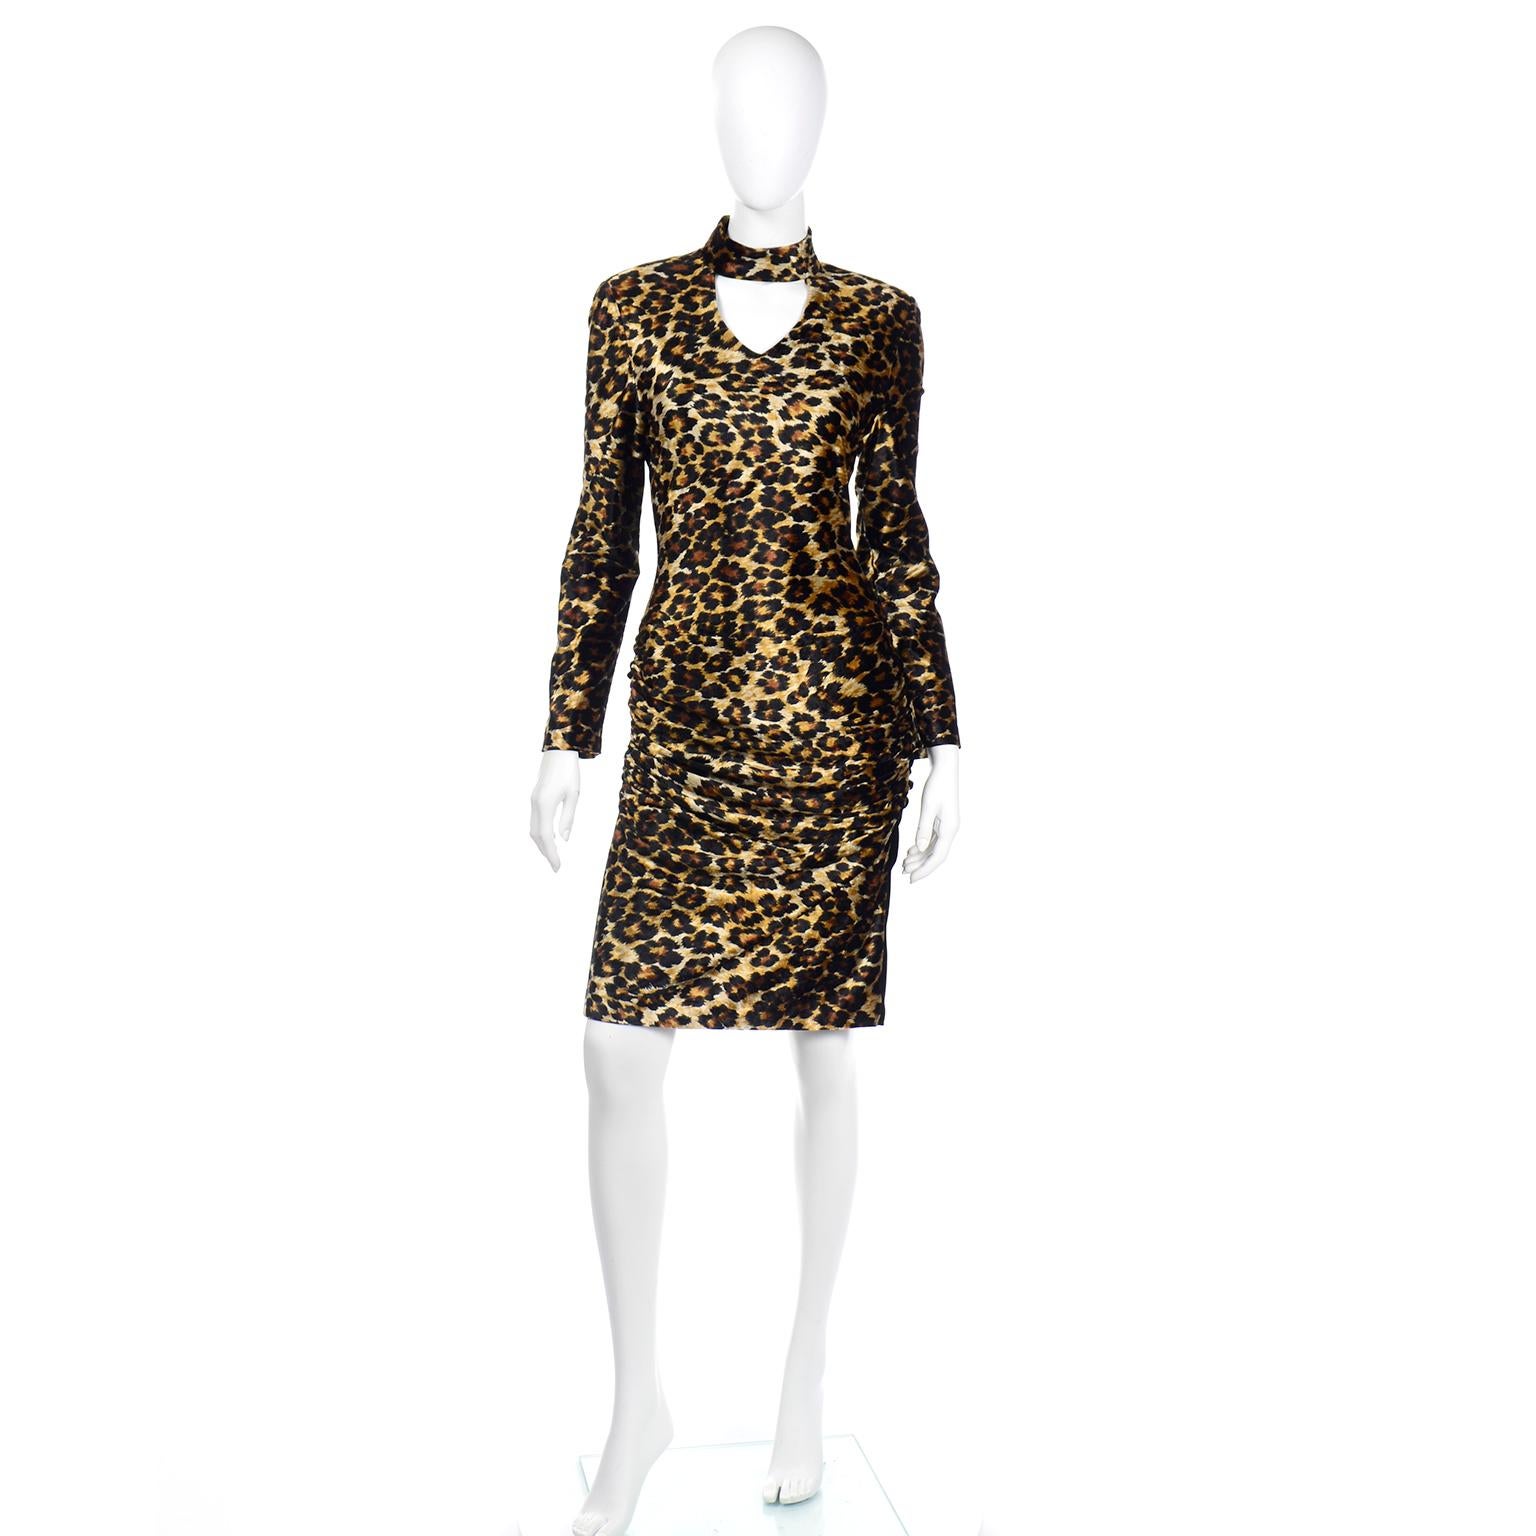 Dieses seltene Vintage-Kleid mit Leopardenmuster von Patrick Kelly ist aus einem Stretch-Stoff mit Rüschen an den mit schwarzem Samt verkleideten Seiten, die sich perfekt an den Körper anschmiegen. Wir lieben dieses Bodycon-Kleid im Vintage-Stil und